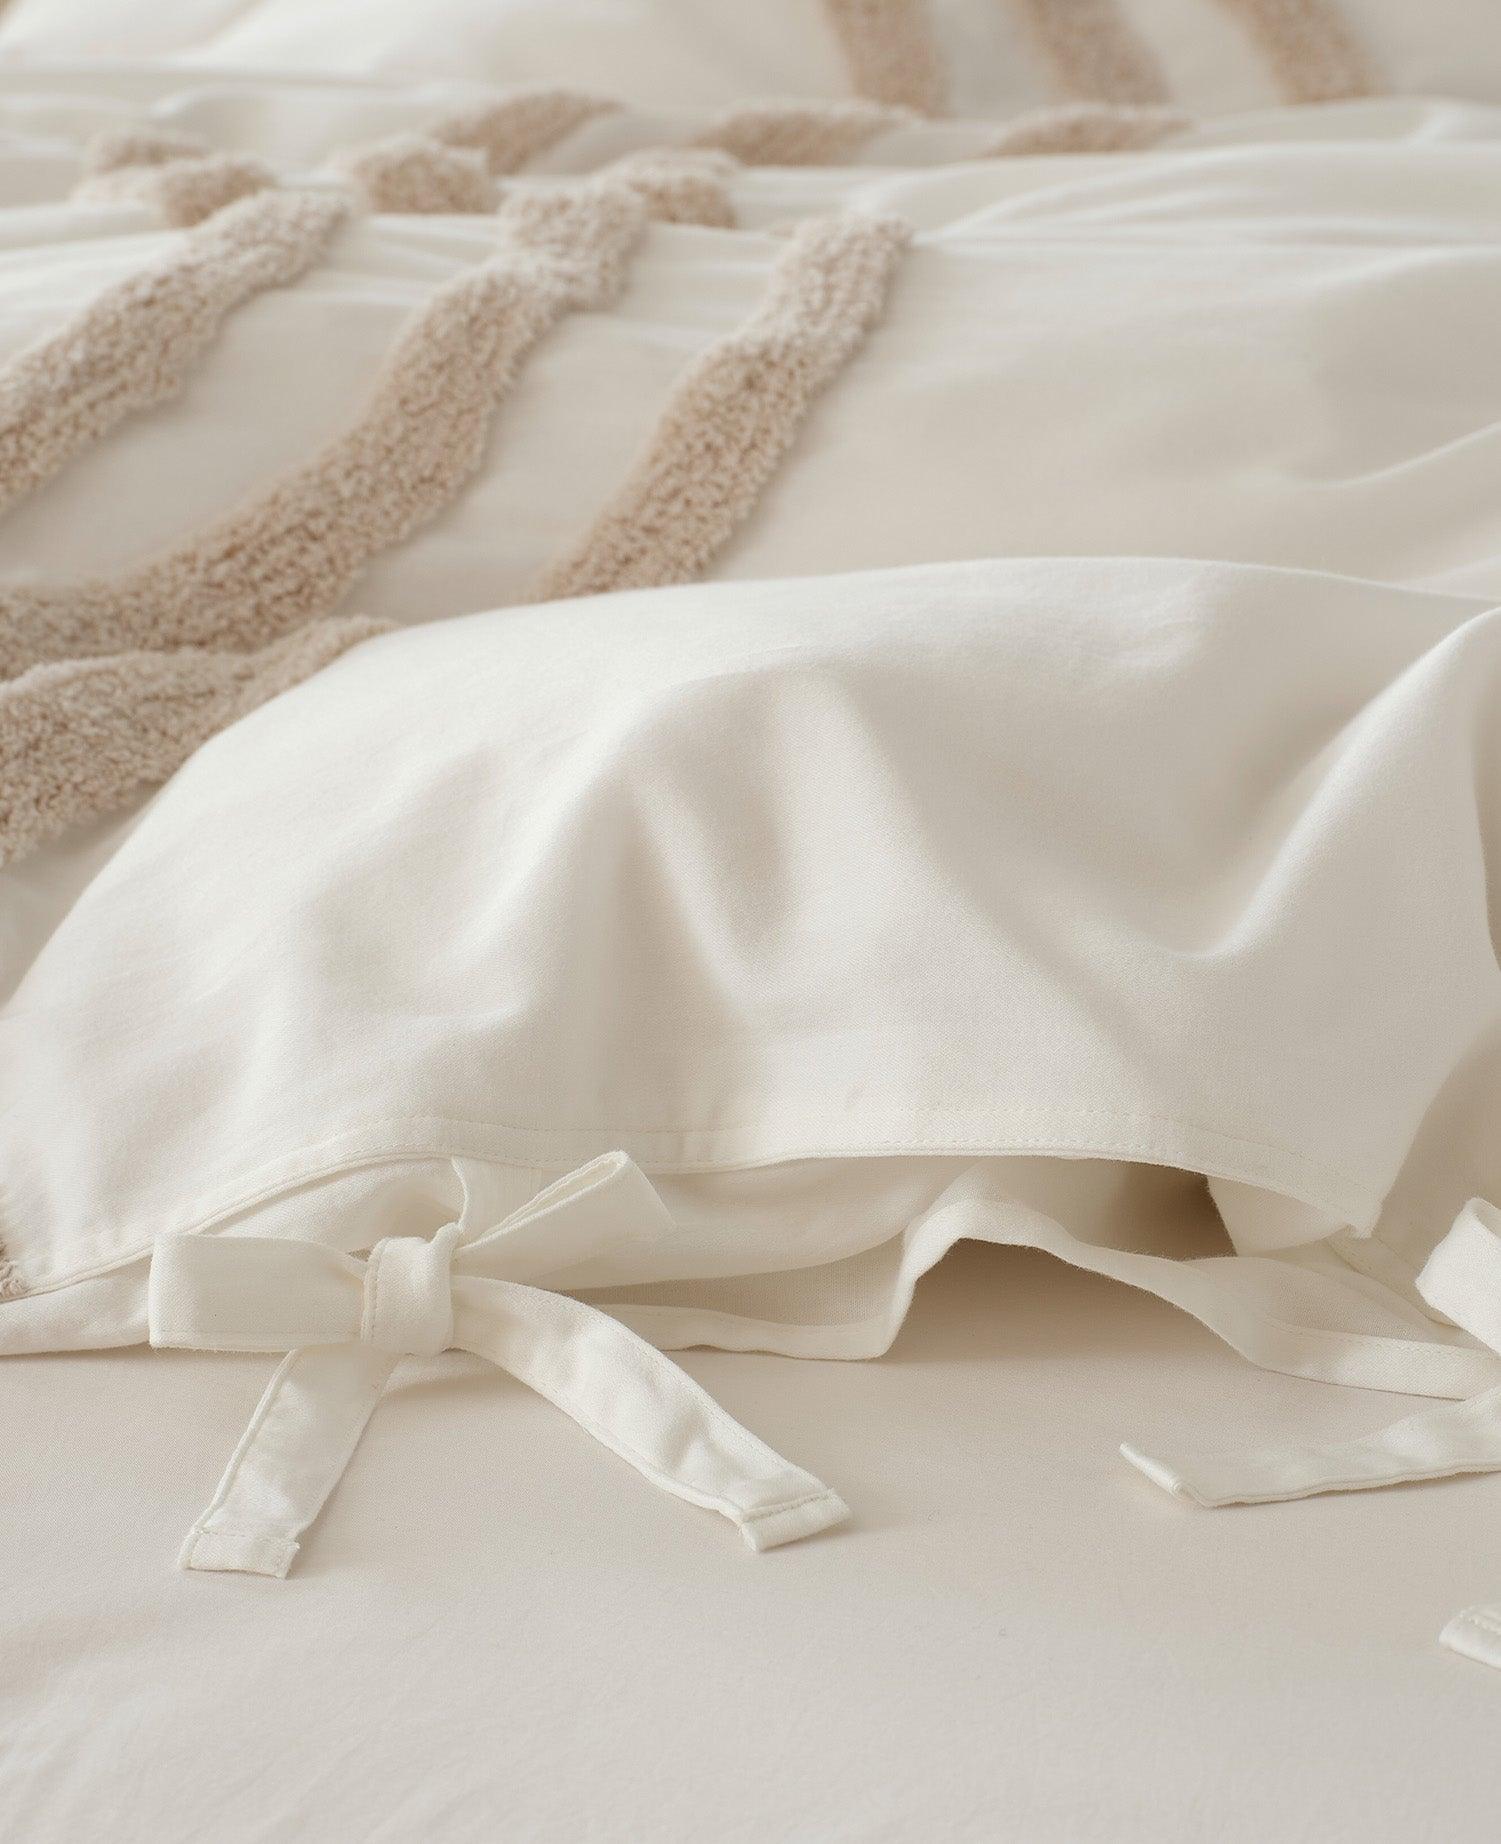 Cotton Tufted Duvet Cover Set - Double Stitch By Bedsure